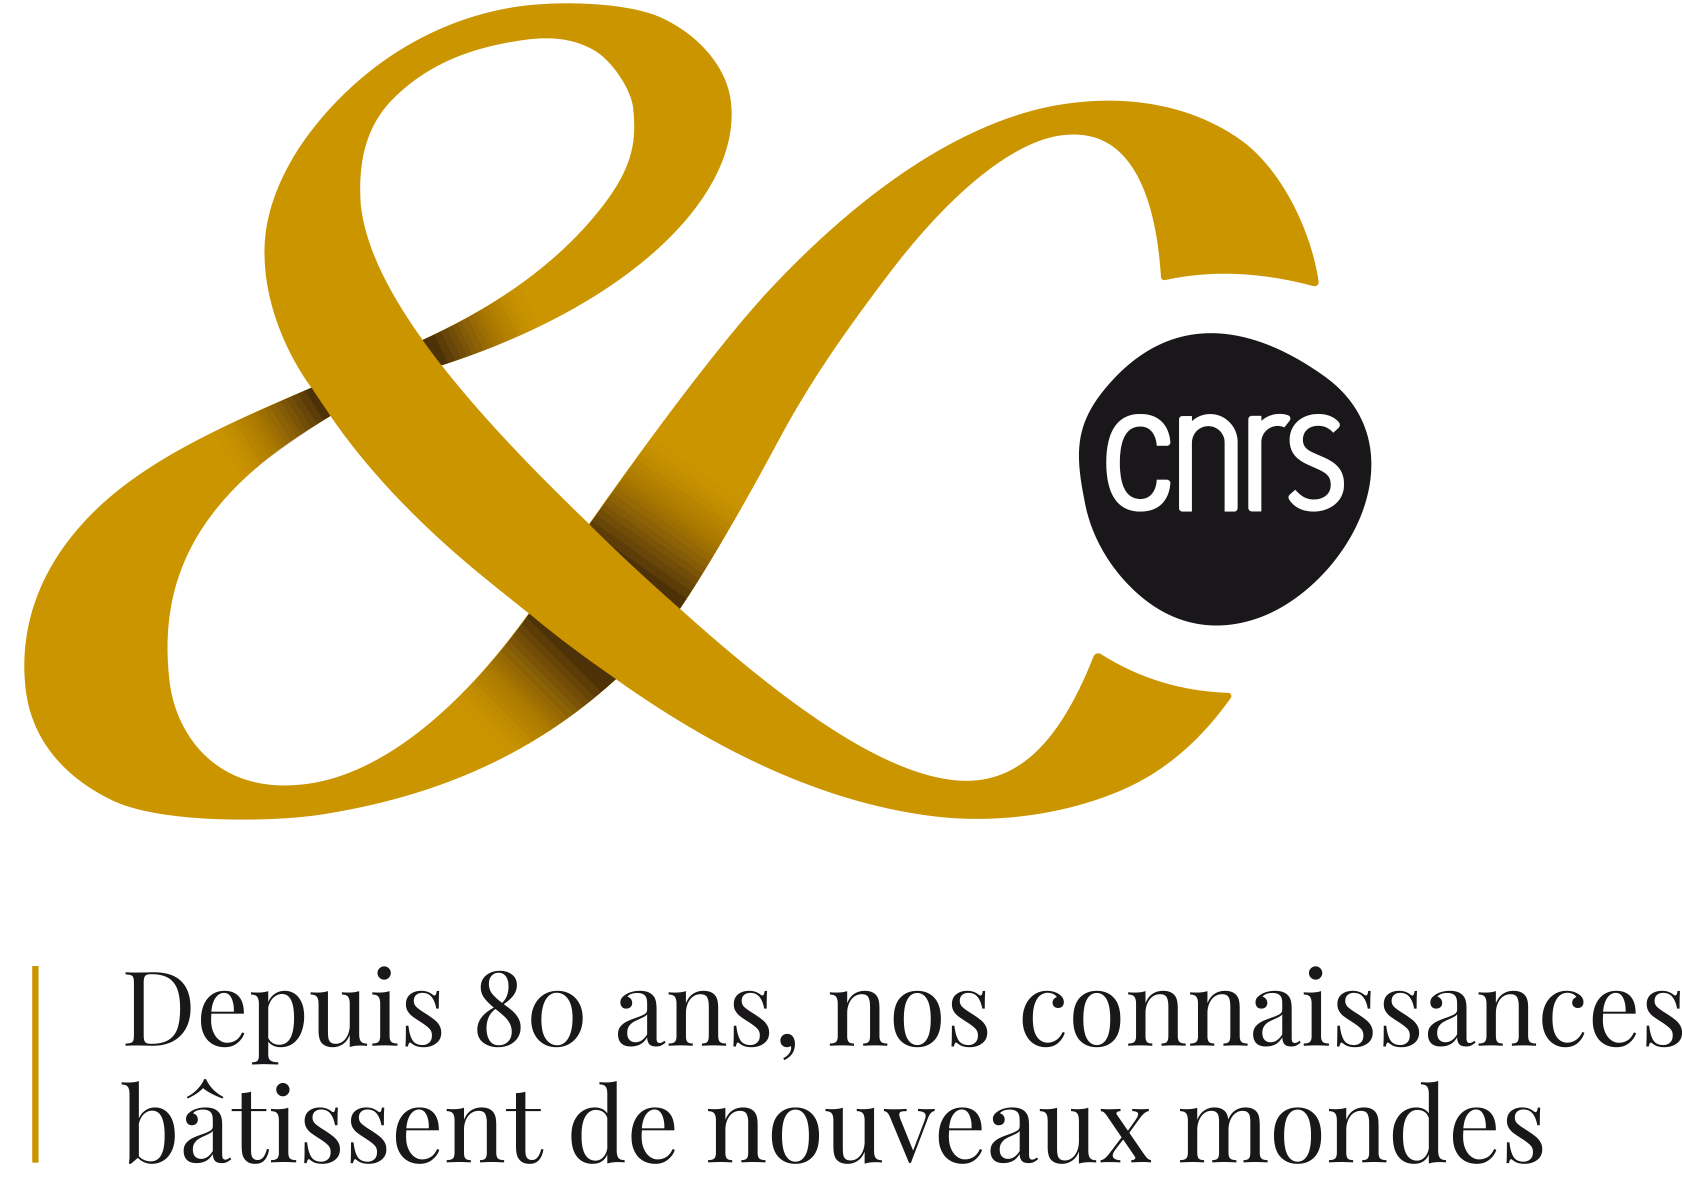 CNRS-INSB